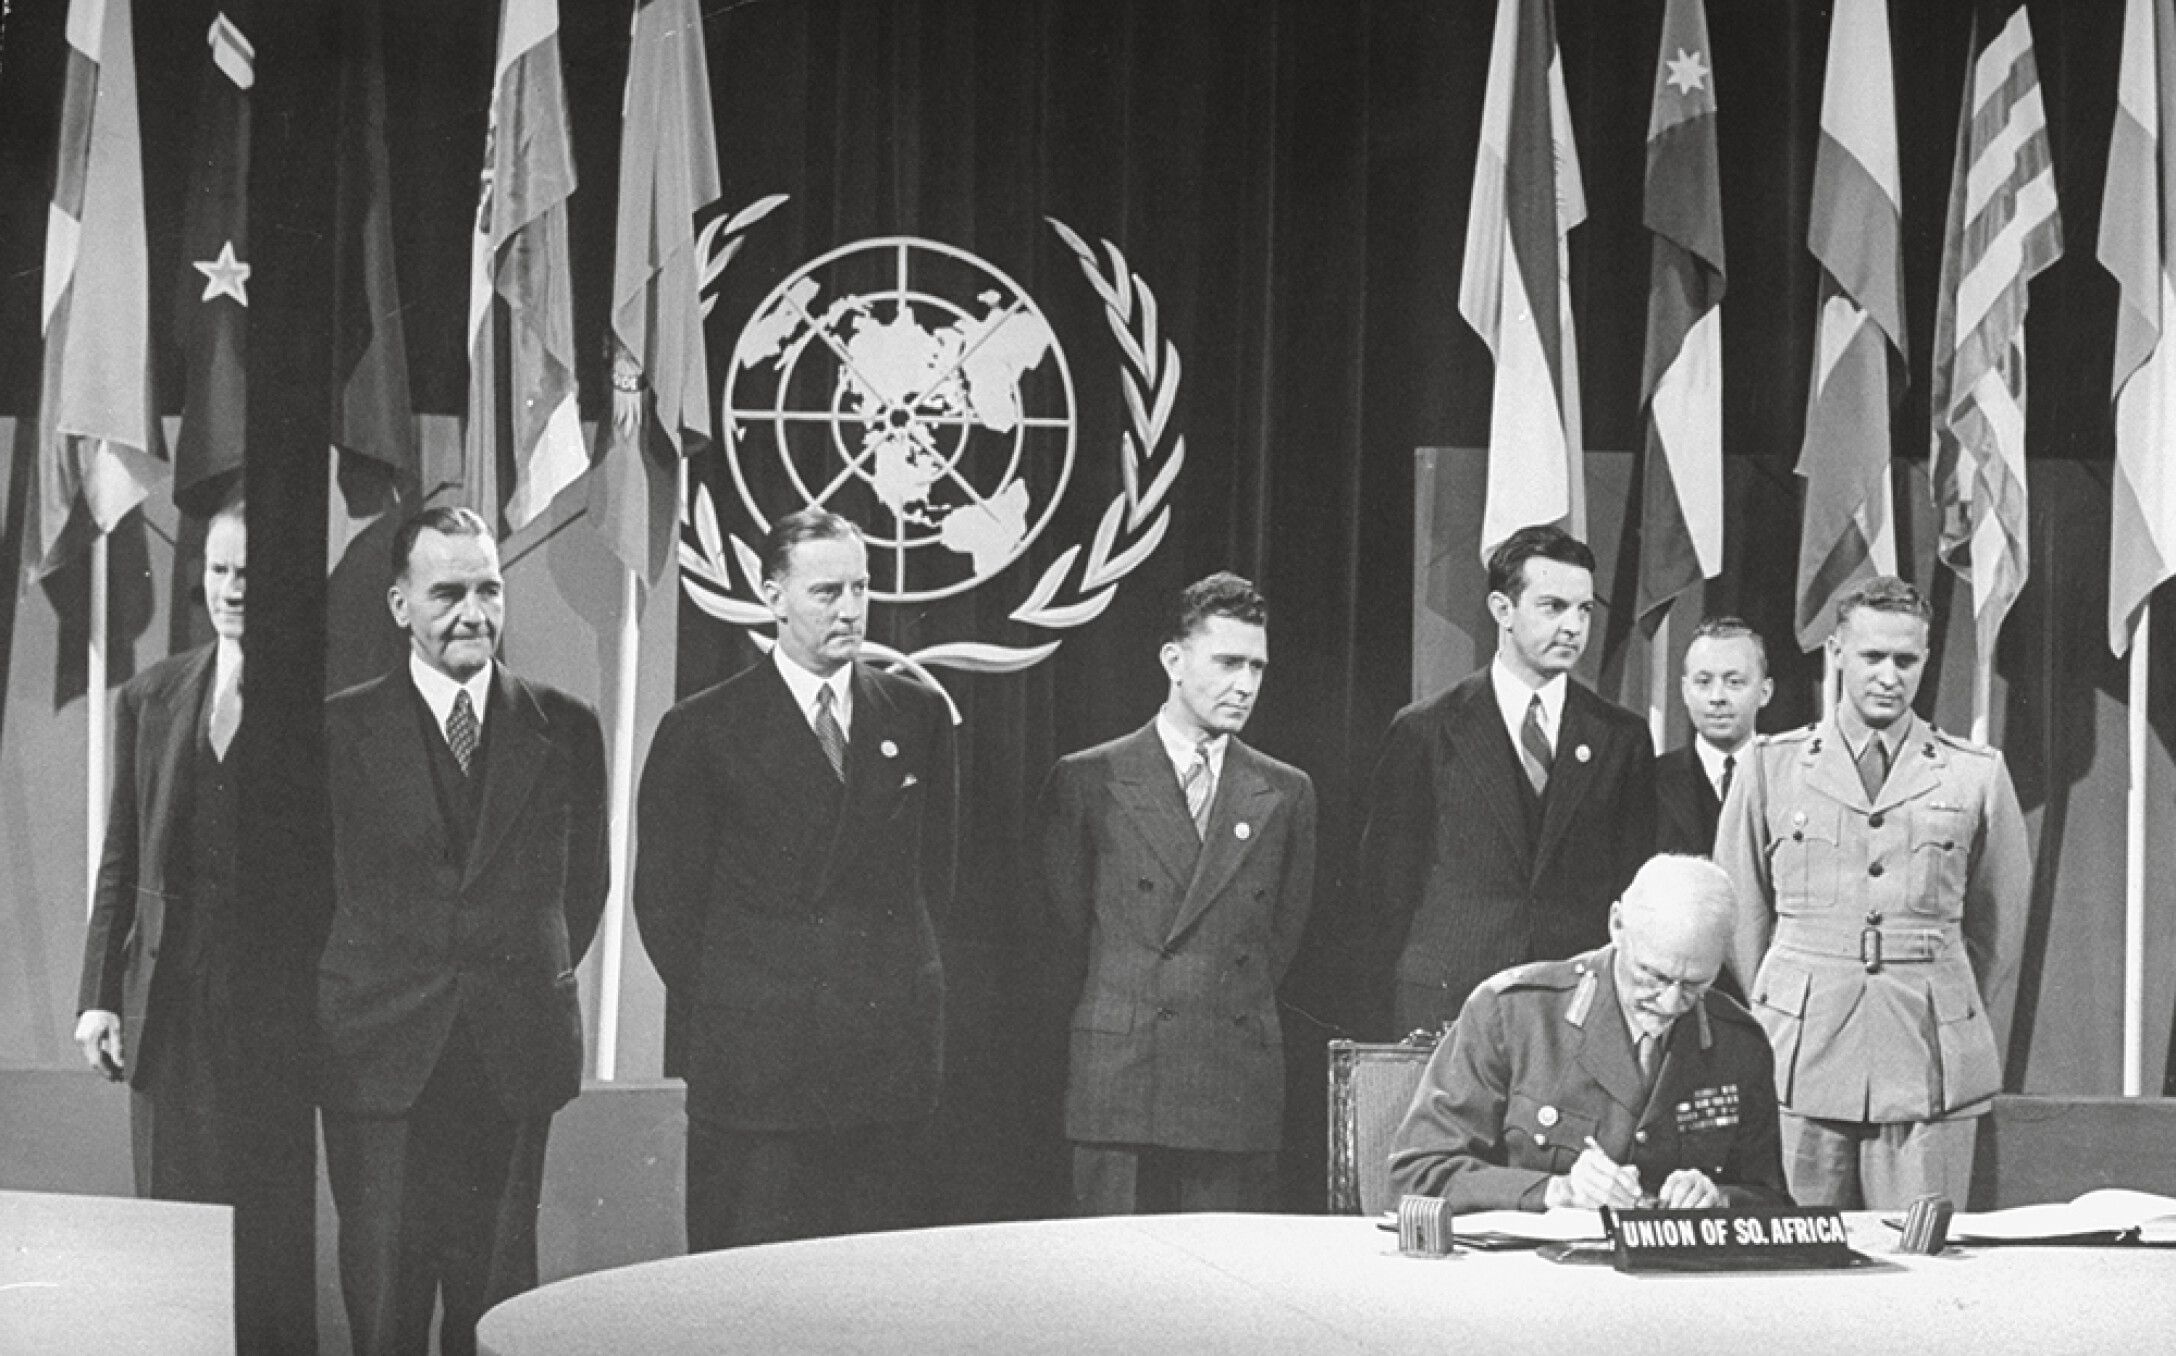 Членство оон. Сан-Францисская конференция устав ООН. Устав ООН 1945. ООН 1945 год. Устав организации Объединенных наций (Сан-Франциско, 26 июня 1945 г.).